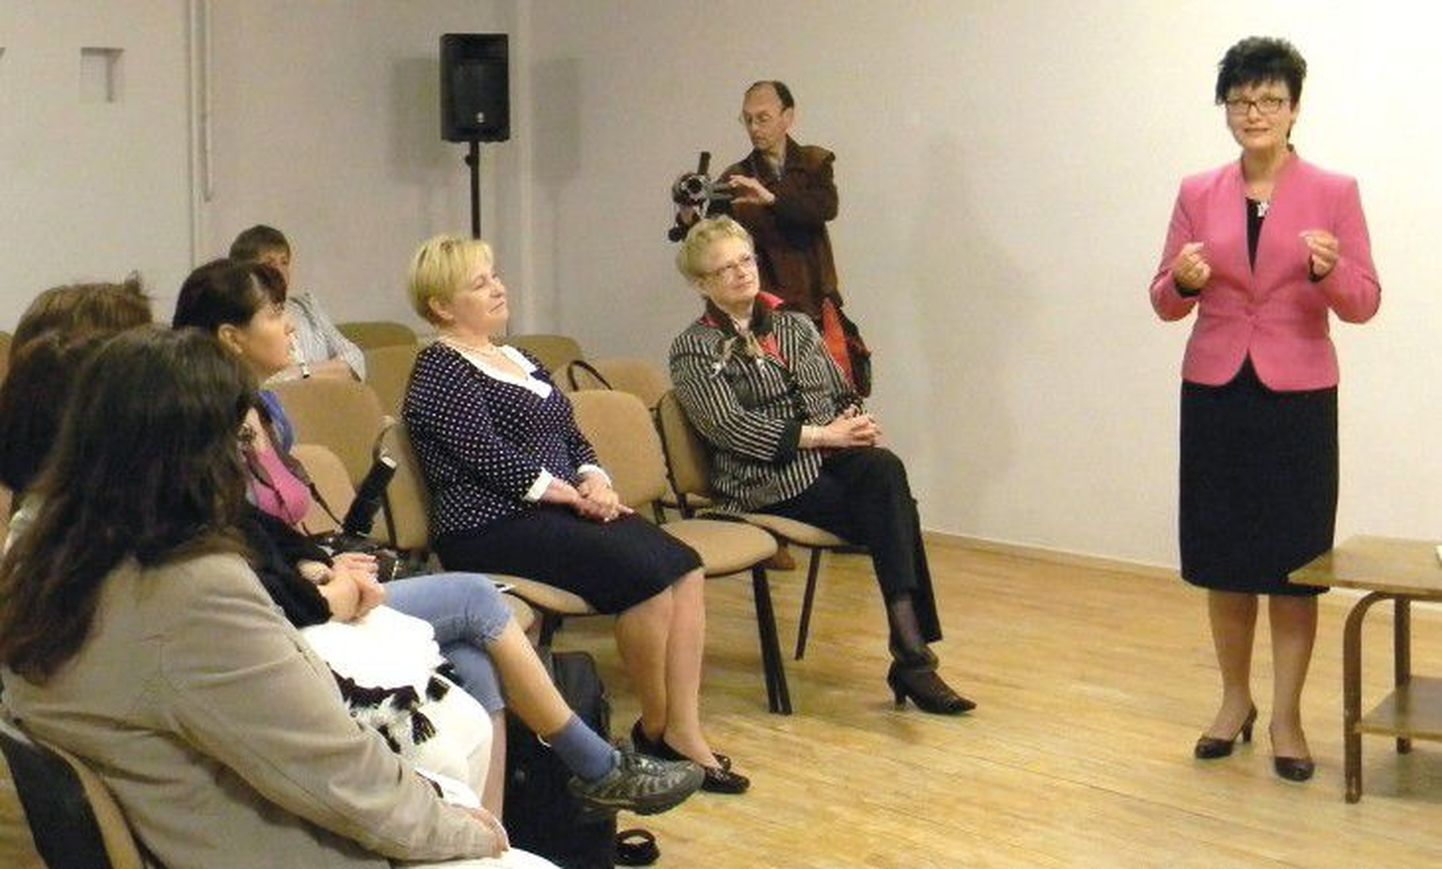 Вице-спикер Рийгикогу Лайне Рандъярв читает на презентации сборника стихотворение Пушкина по-эстонски.